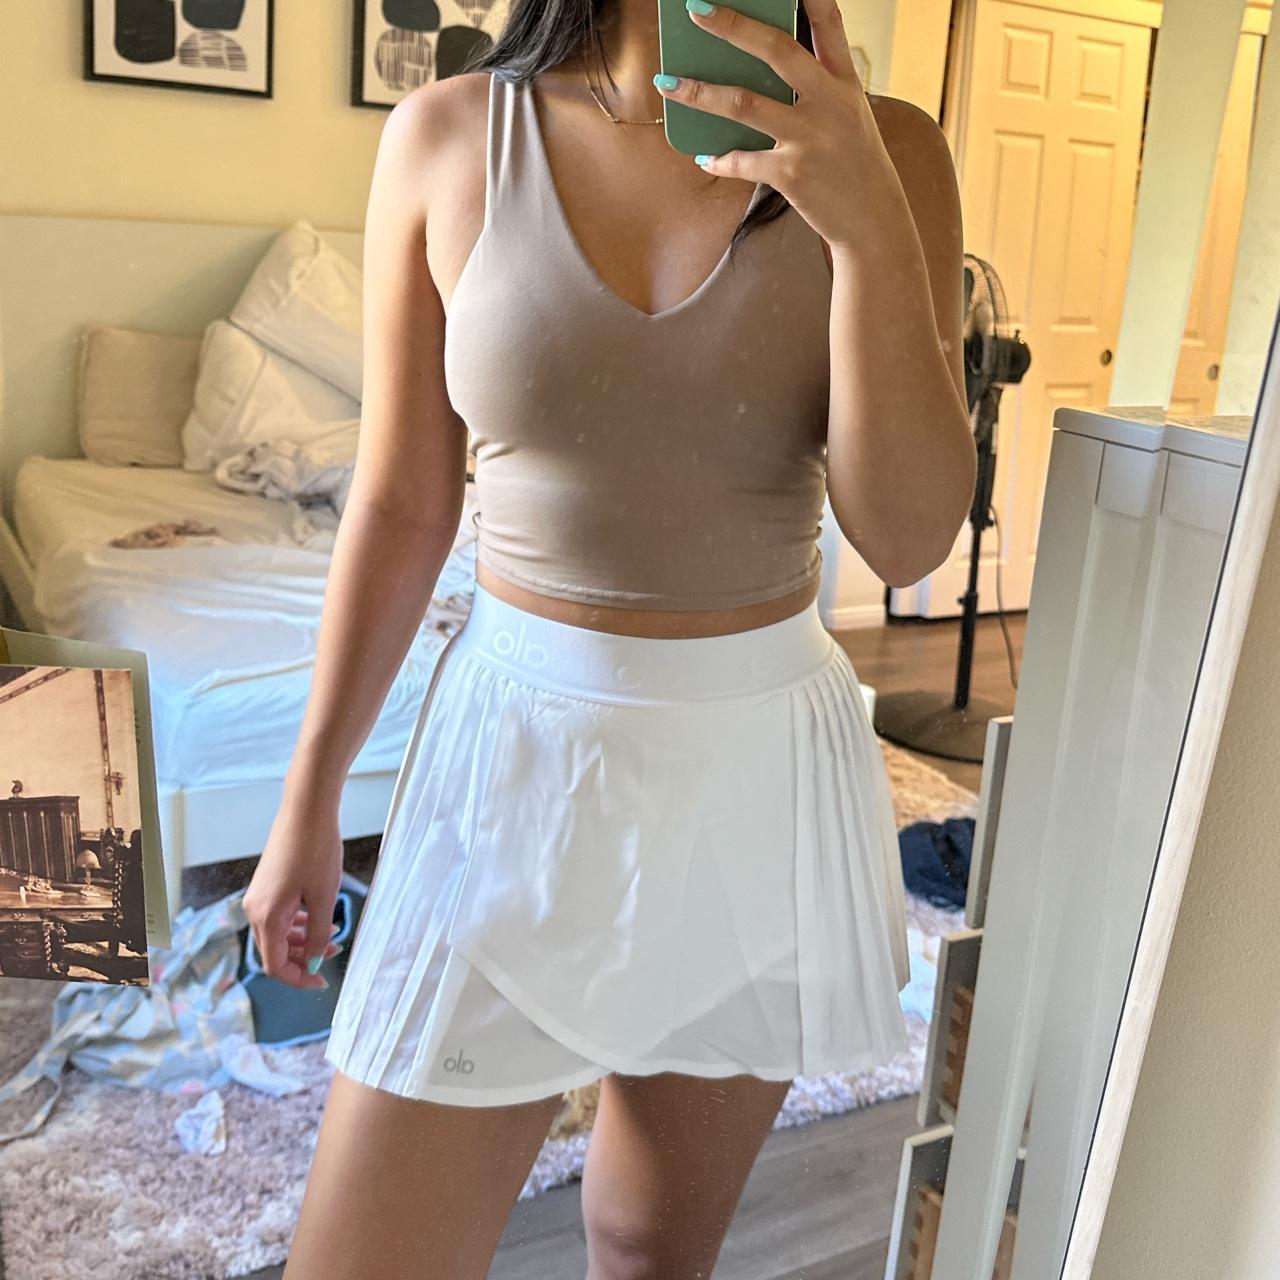 Aces Tennis Skirt - White